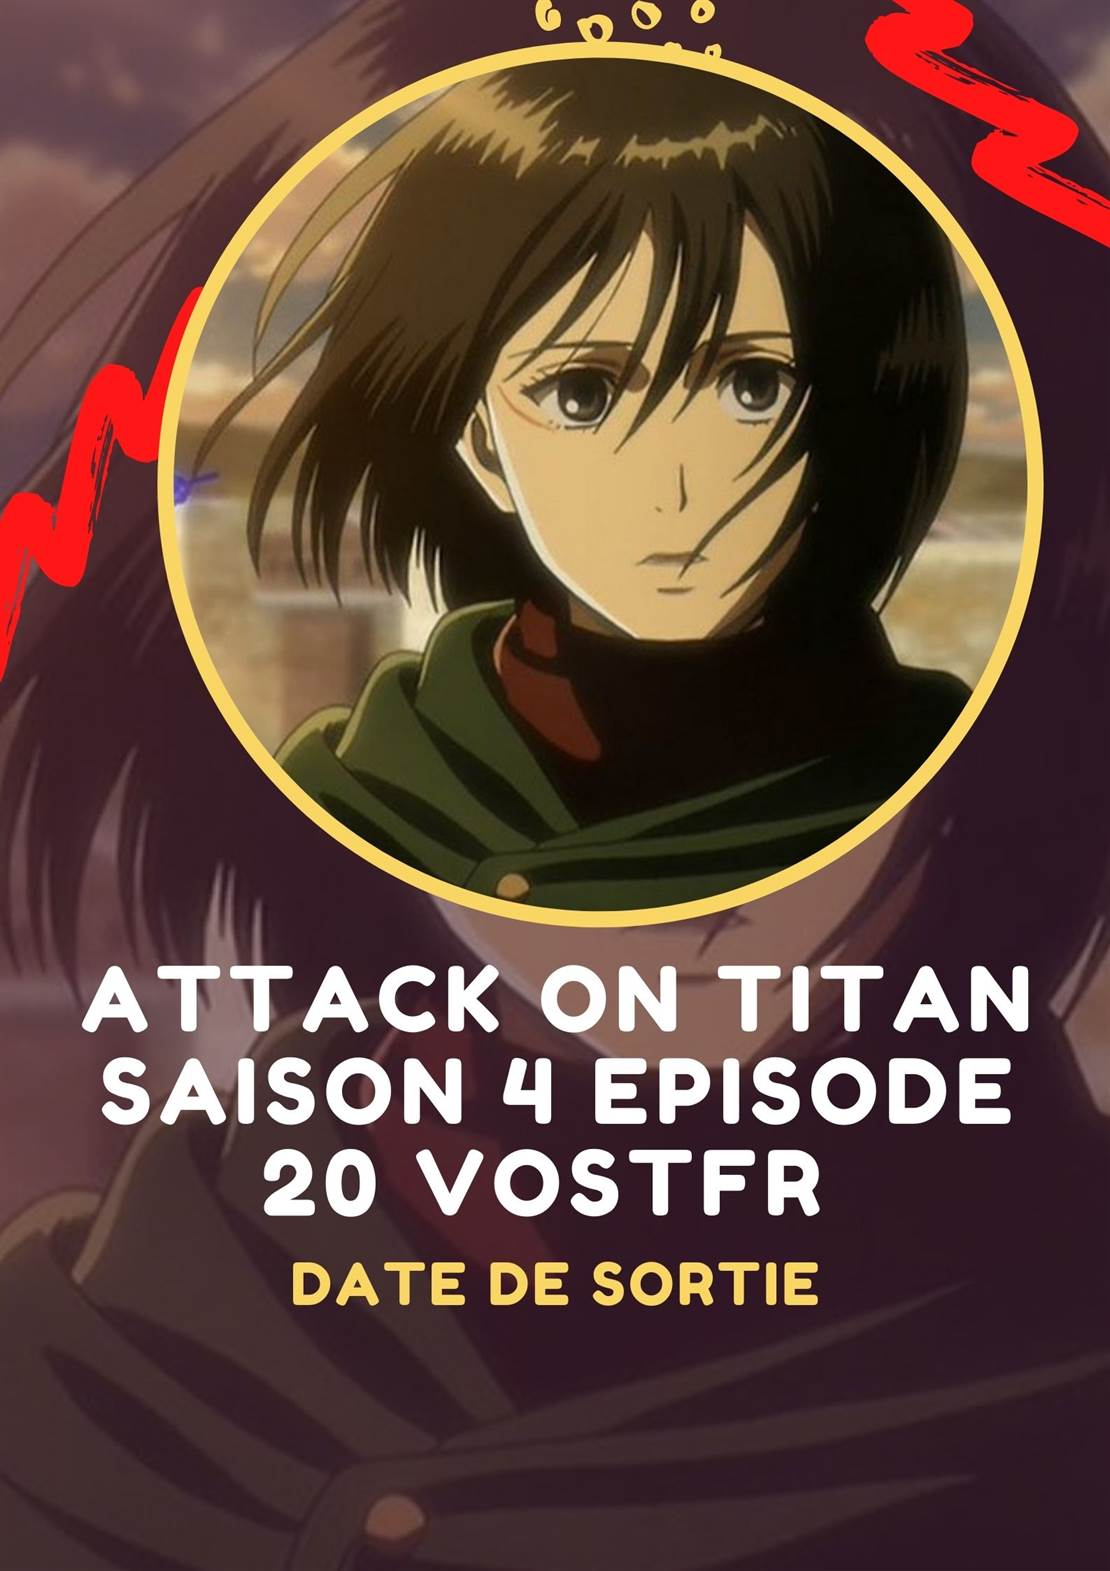 Attack On Titan Saison 4 Episode 20 Vostfr Streaming : Date de sortie